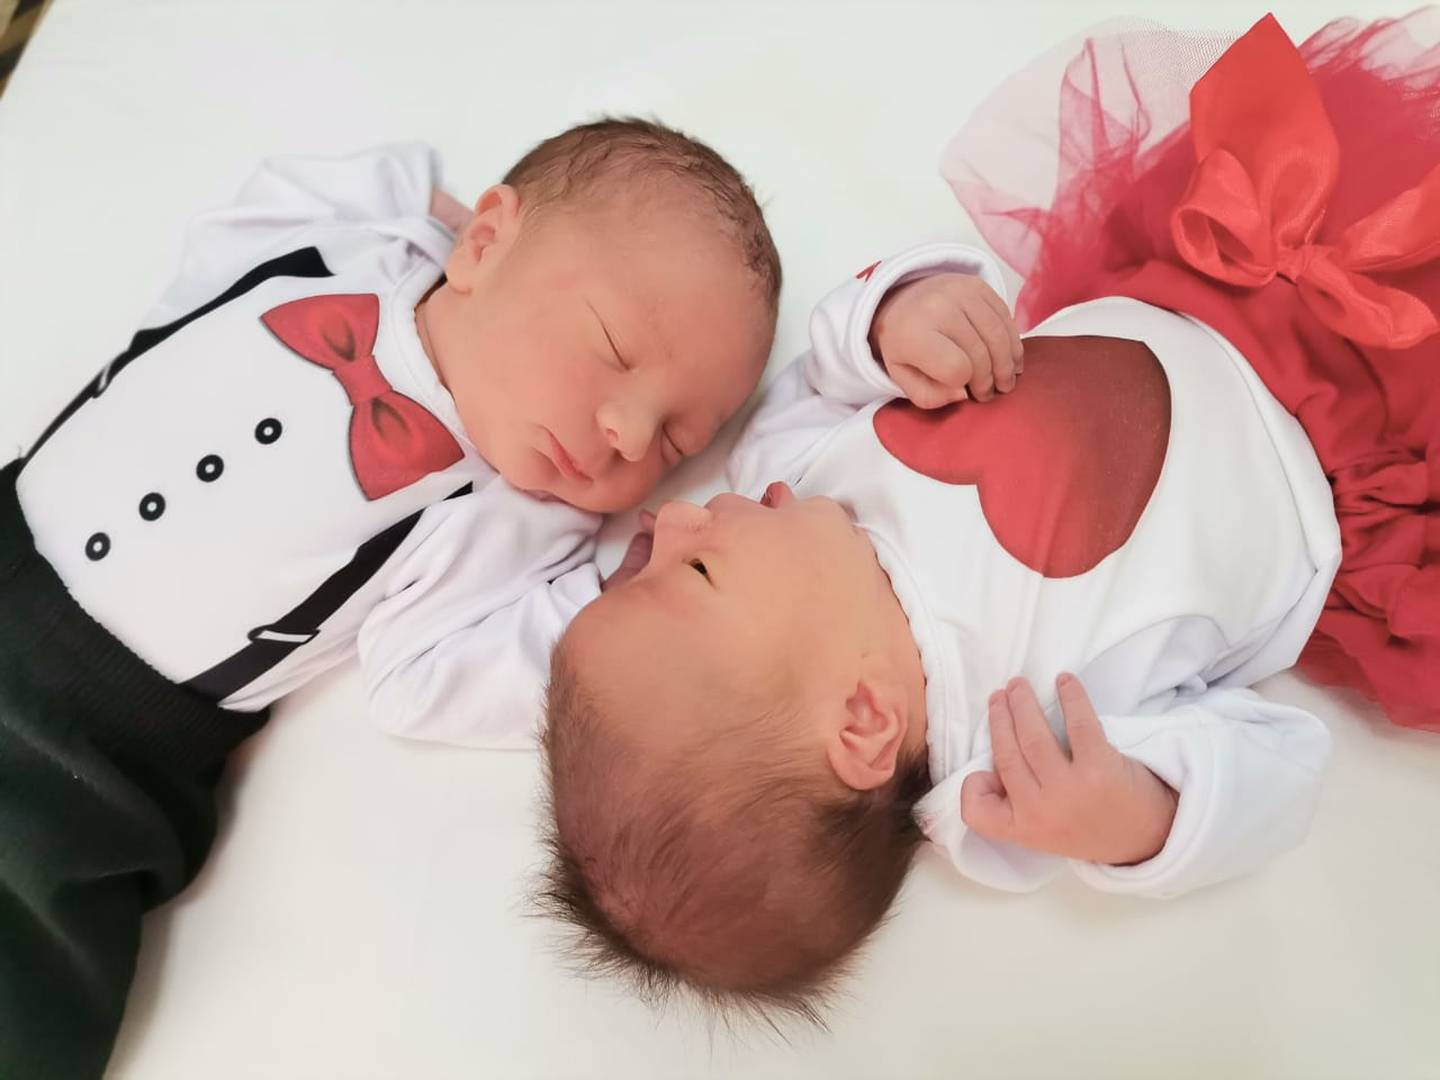 Los bebitos recién nacidos del hospital Escalante Pradilla de Pérez Zeledón se pusieron trajecito entero para darle tremenda serenata a sus mamitas.